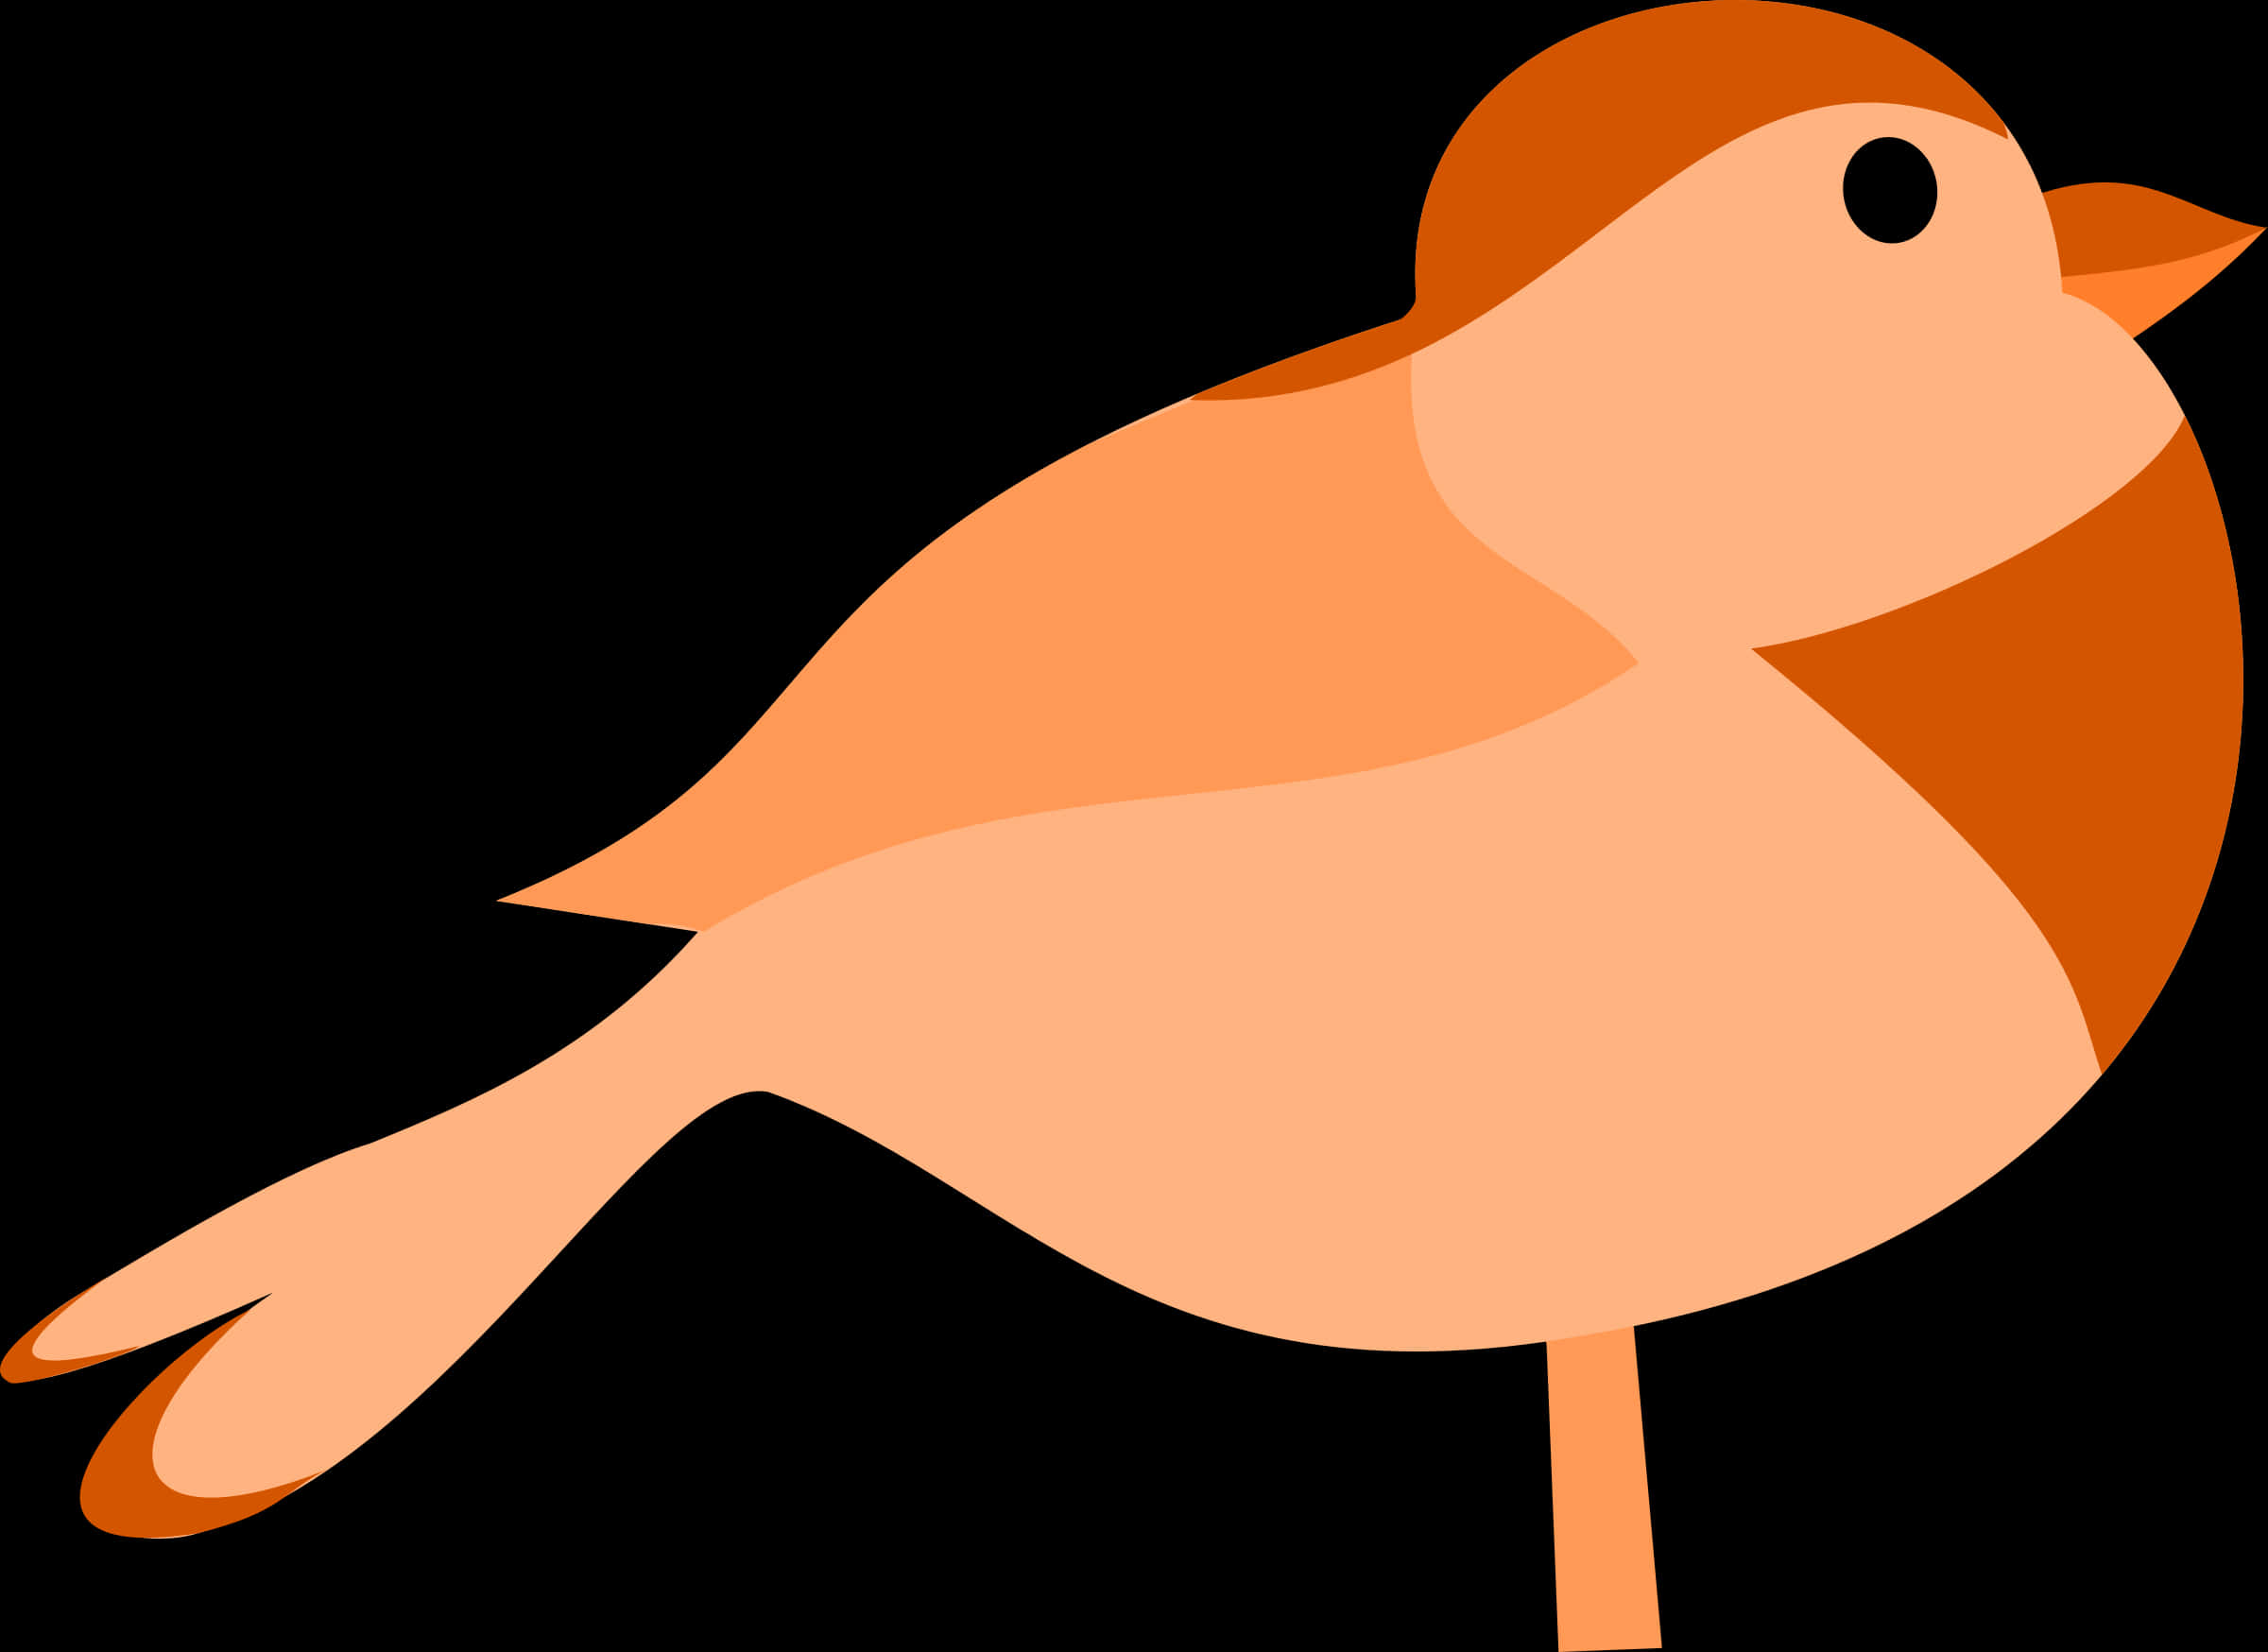 Stylized Orange Bird Illustration PNG